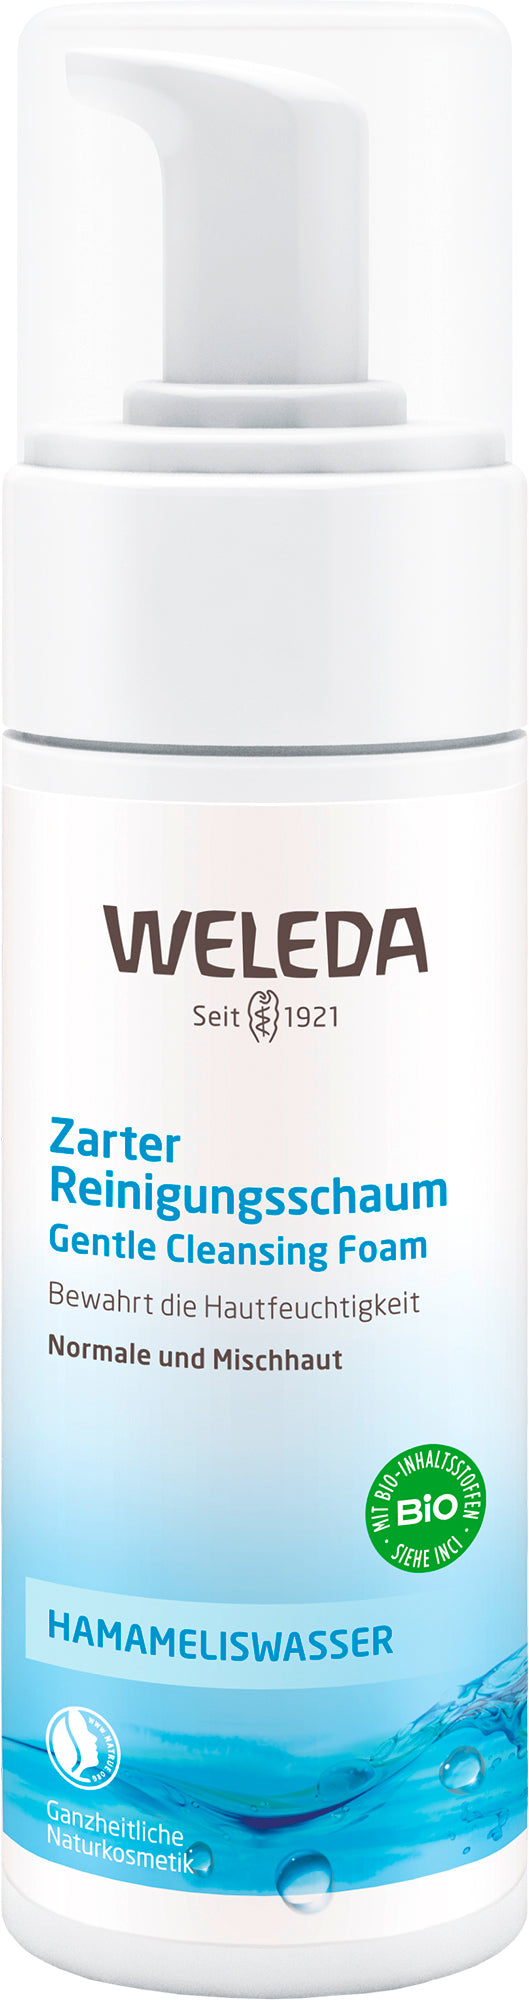 Weleda - Zarter Reinigungsschaum 150 ml